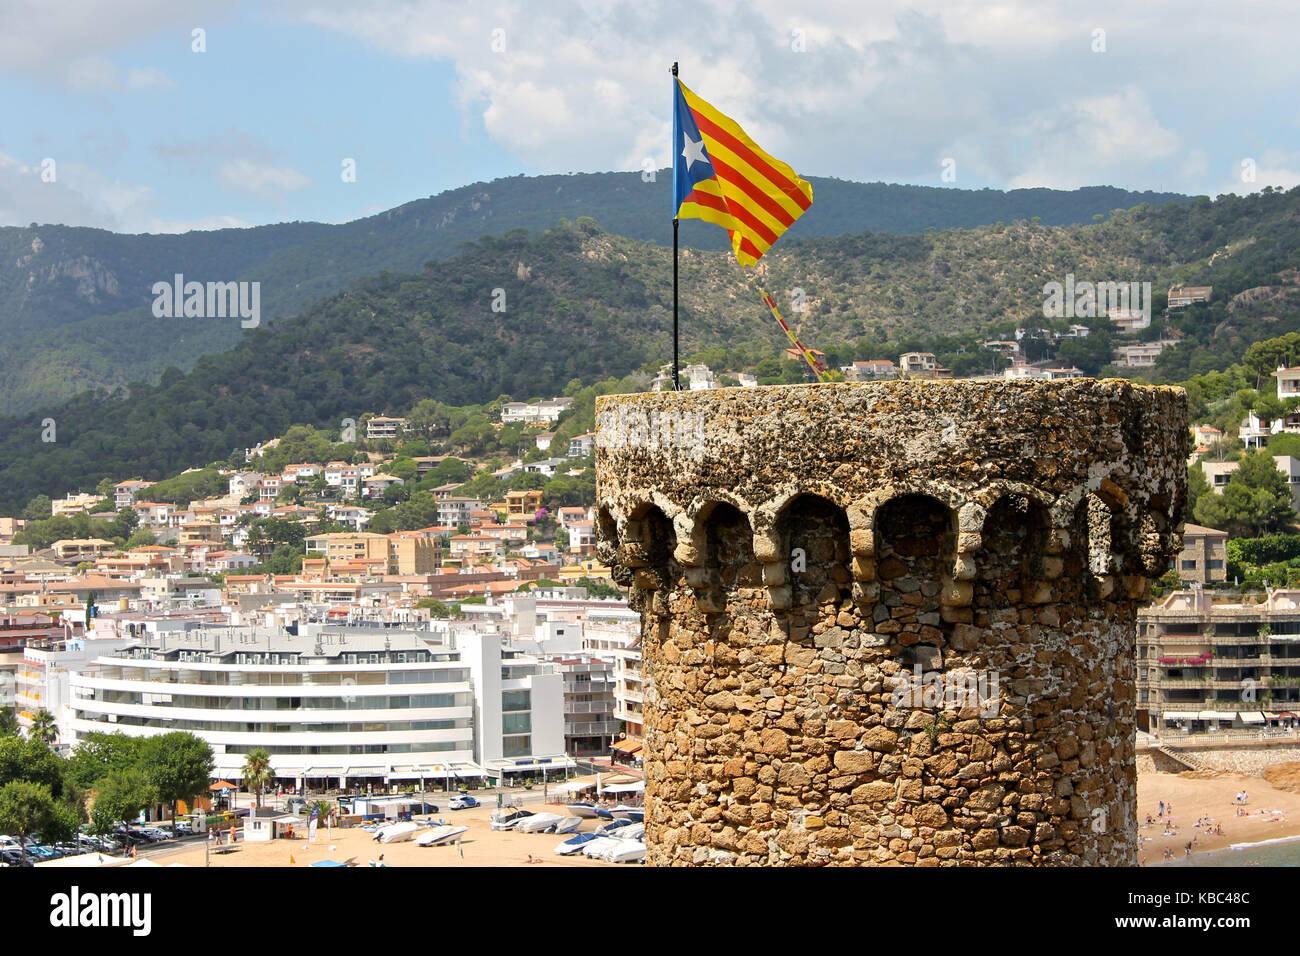 Eine Senyera estelada, der inoffiziellen Flagge in der Regel von dem katalanischen Unabhängigkeit Unterstützer geflogen, winken auf dem Turm der Festung Tossa de Mar, Katalonien, S Stockfoto